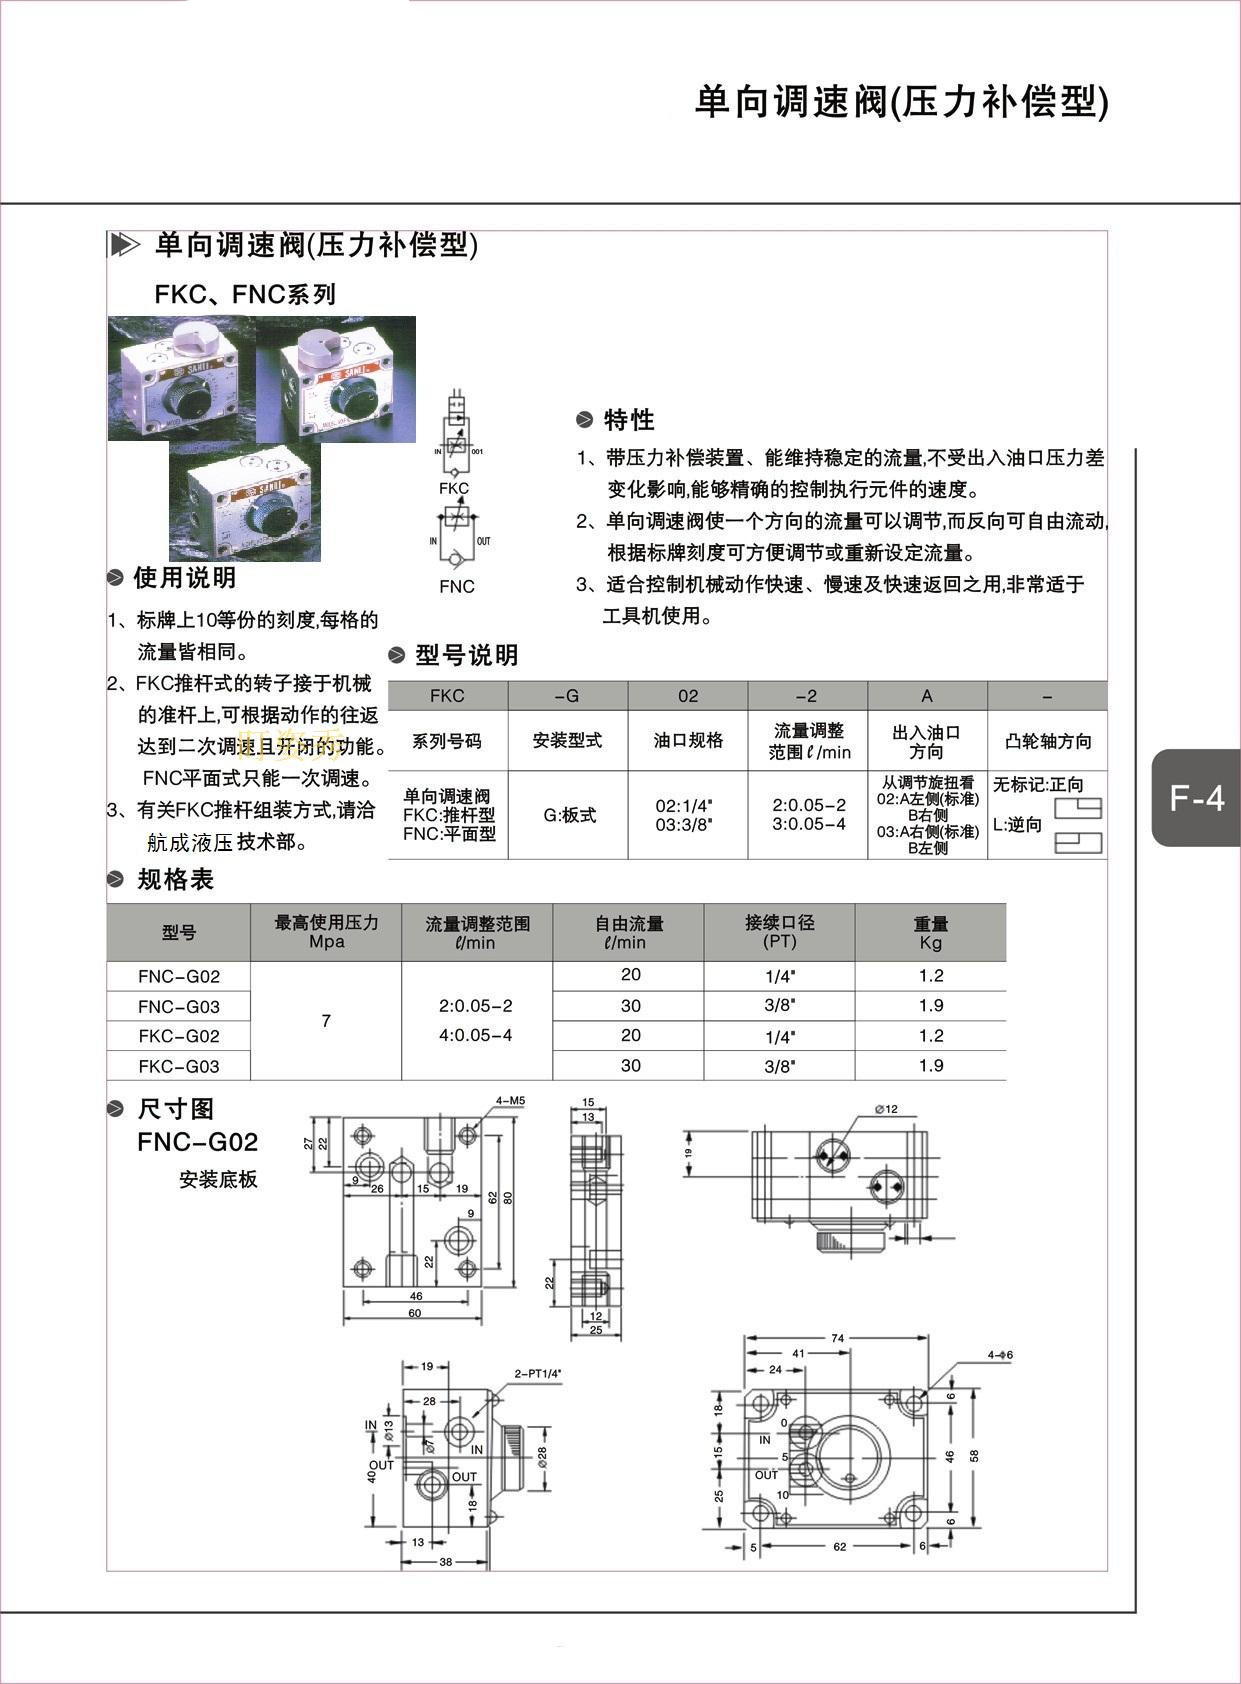 钻孔动力头调速阀fkc-02a-4加工定制:否 类型:流量阀 材质:铸铁 型号